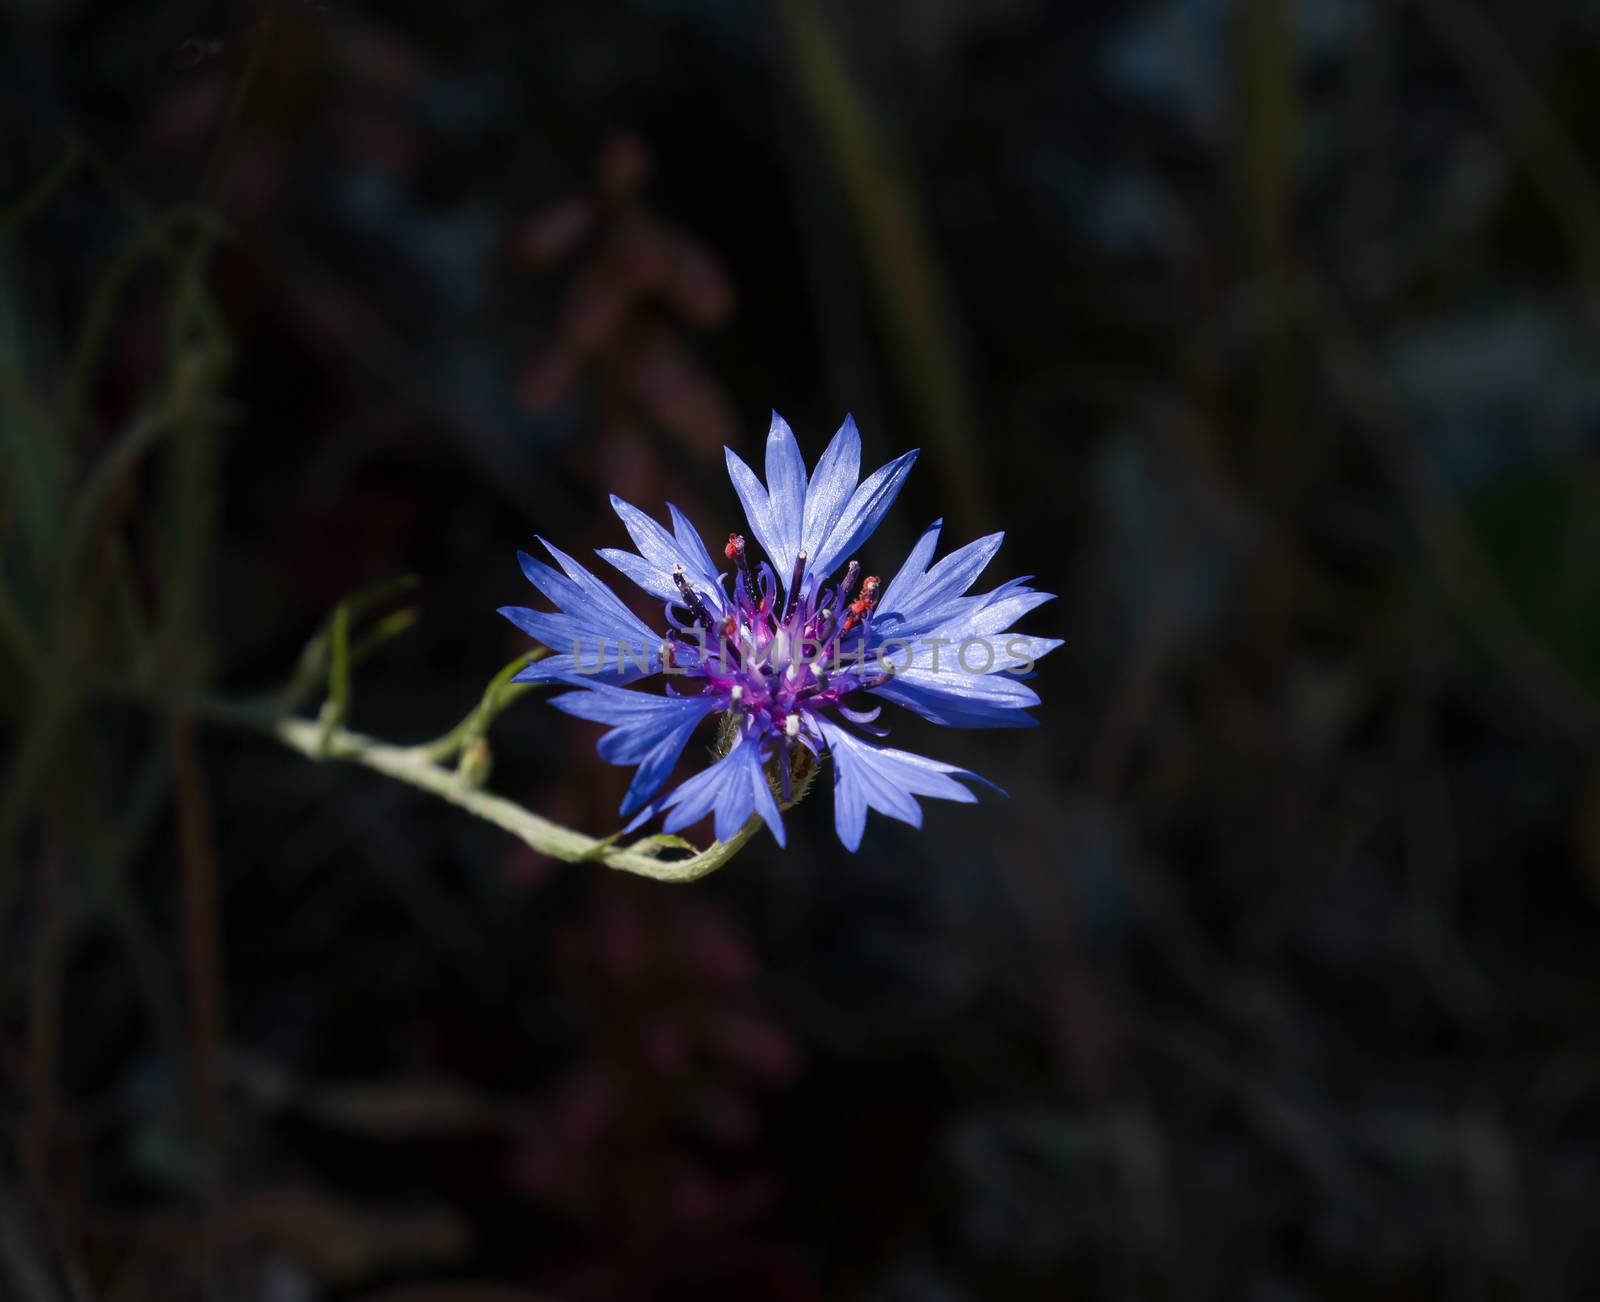 Vivid blue Cornflower against dark background.